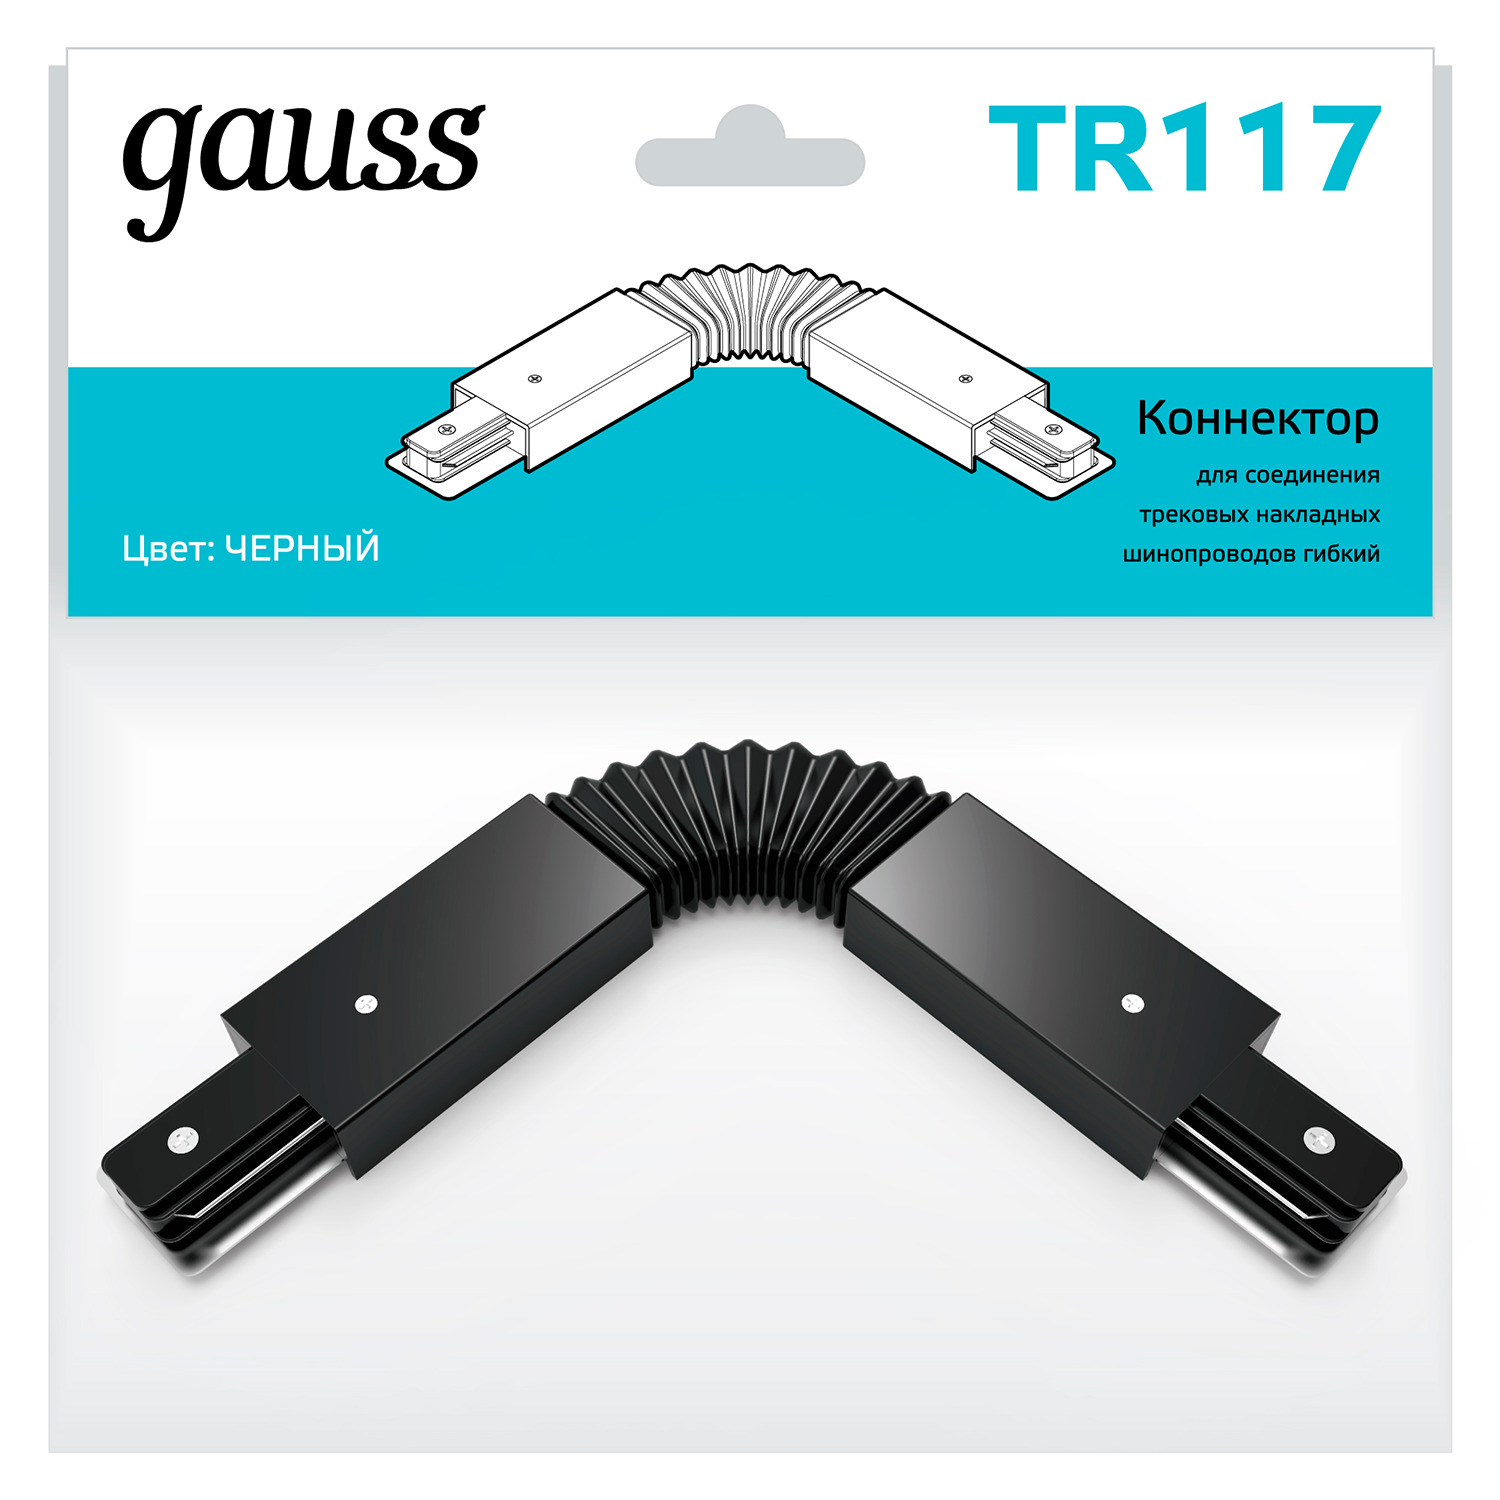 gauss коннектор для трековых шинопроводов гибкий i черный арт tr117 Коннектор Gauss для трековых шинопроводов гибкий (I) черный